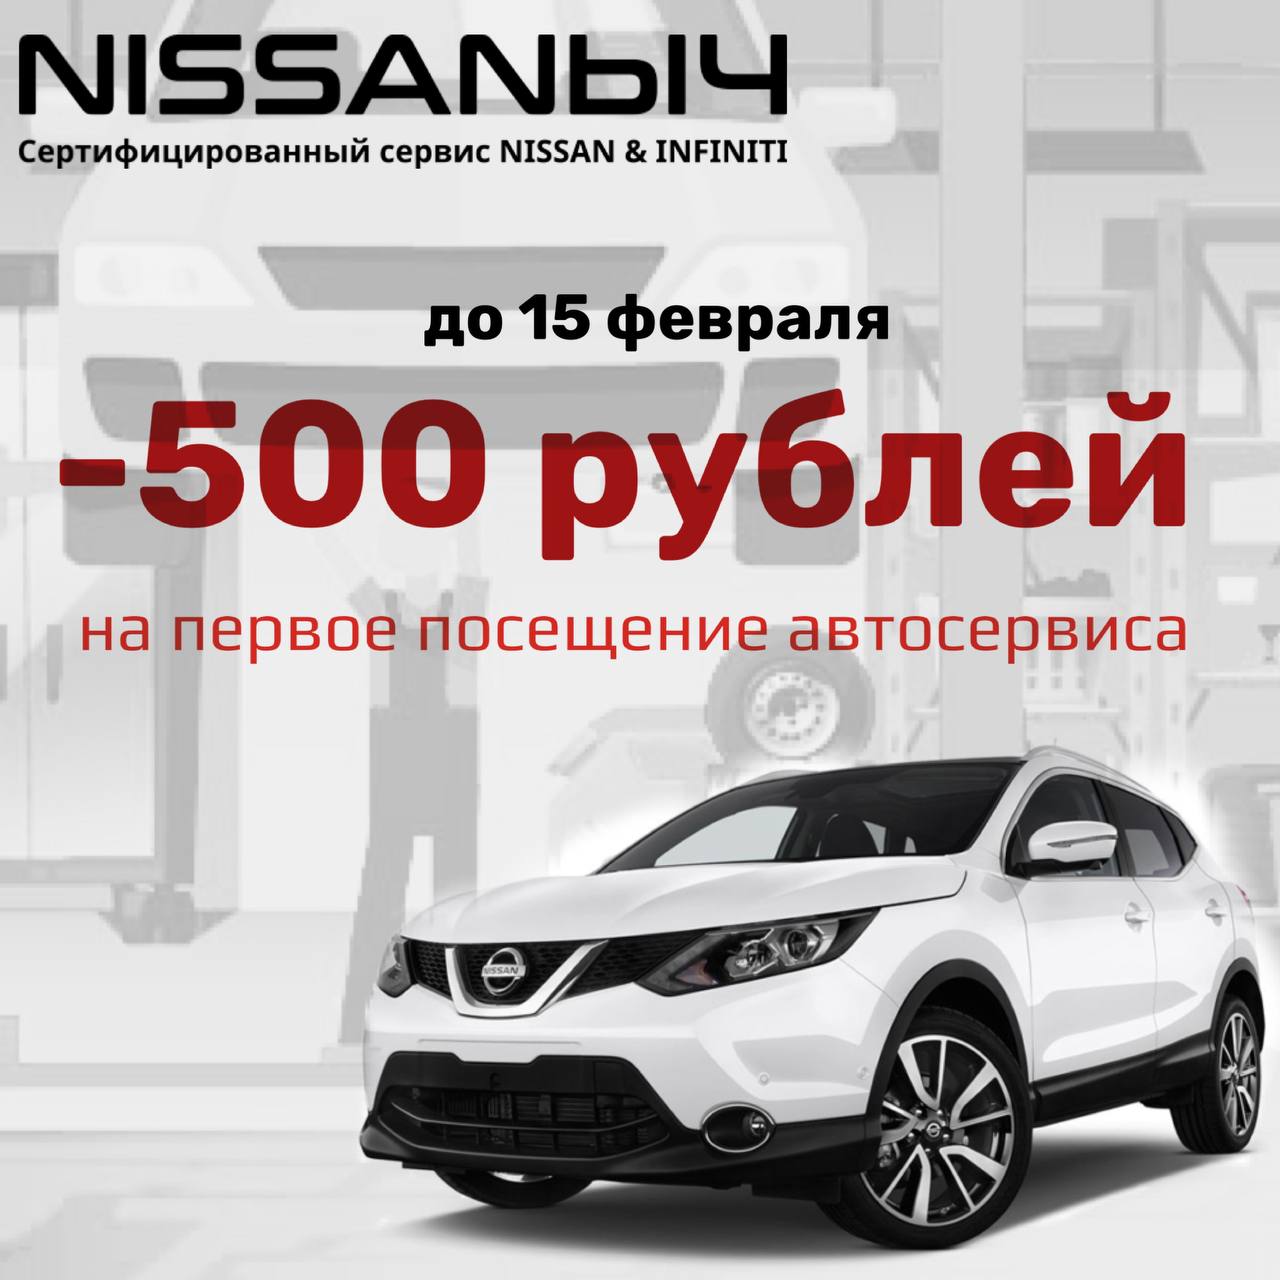 Акция для владельцев автомобилей NISSAN & INFINITI